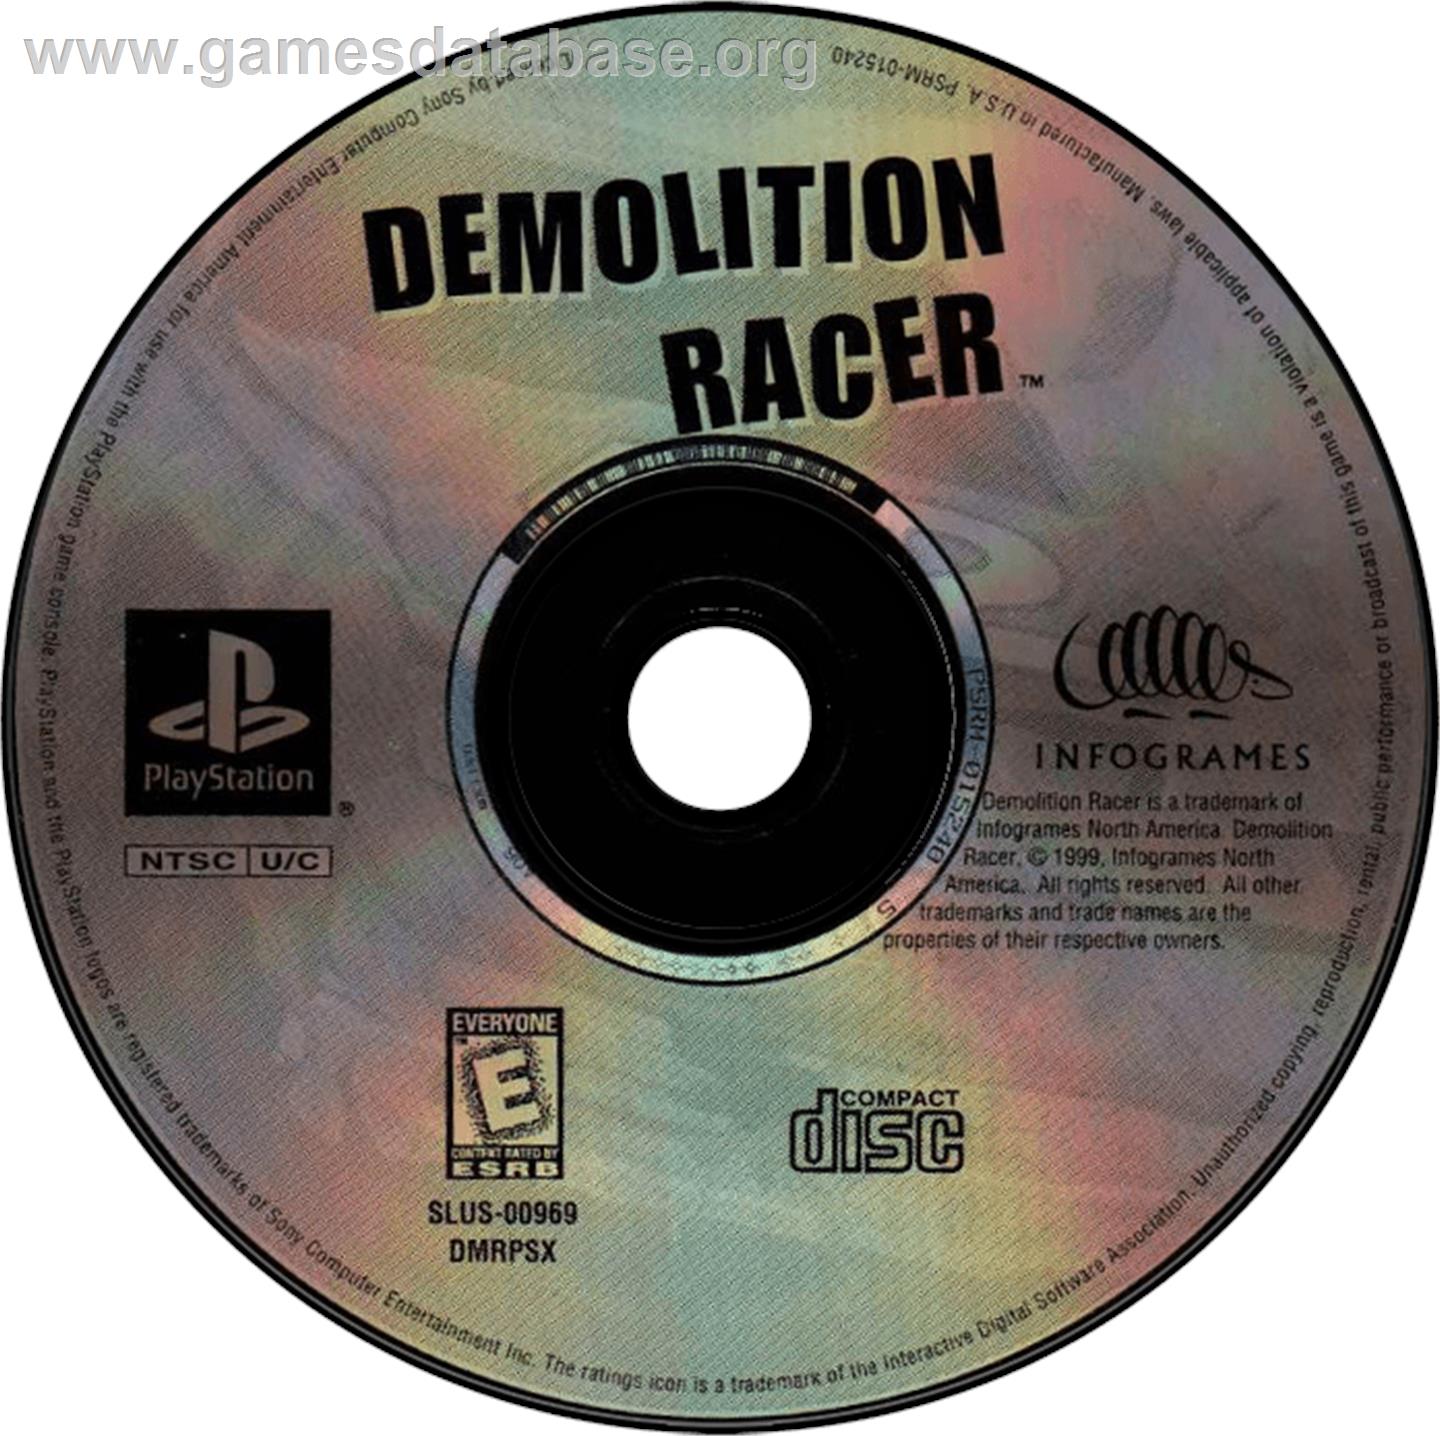 Demolition Racer - Sony Playstation - Artwork - Disc